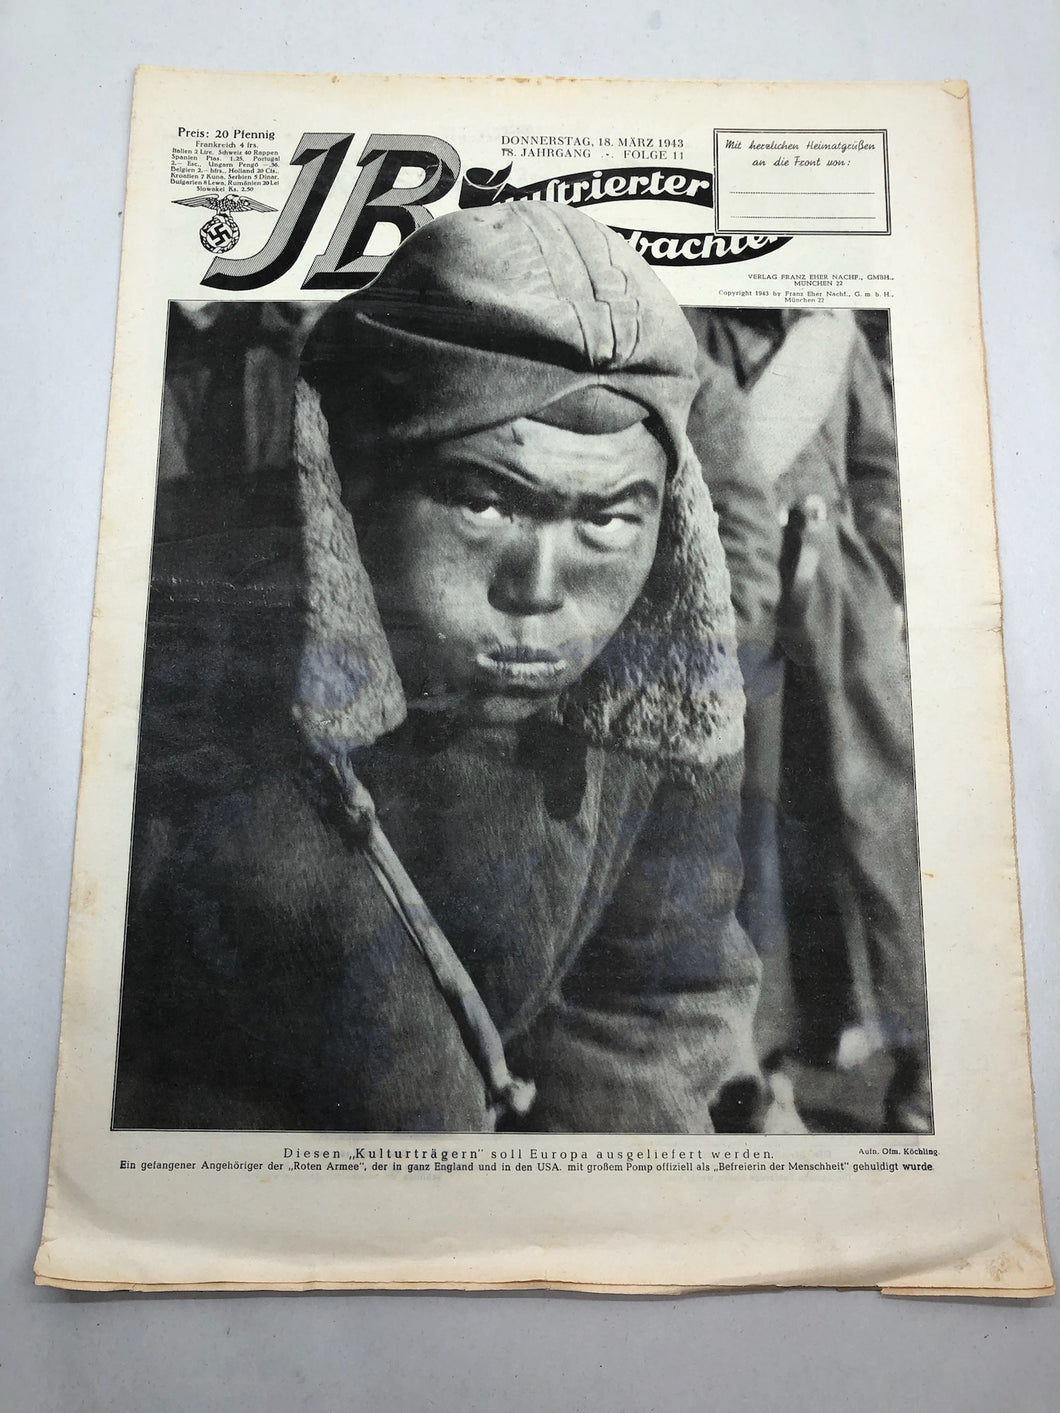 JB Juustrierter Beobachter NSDAP Magazine Original WW2 German - 18 March 1943